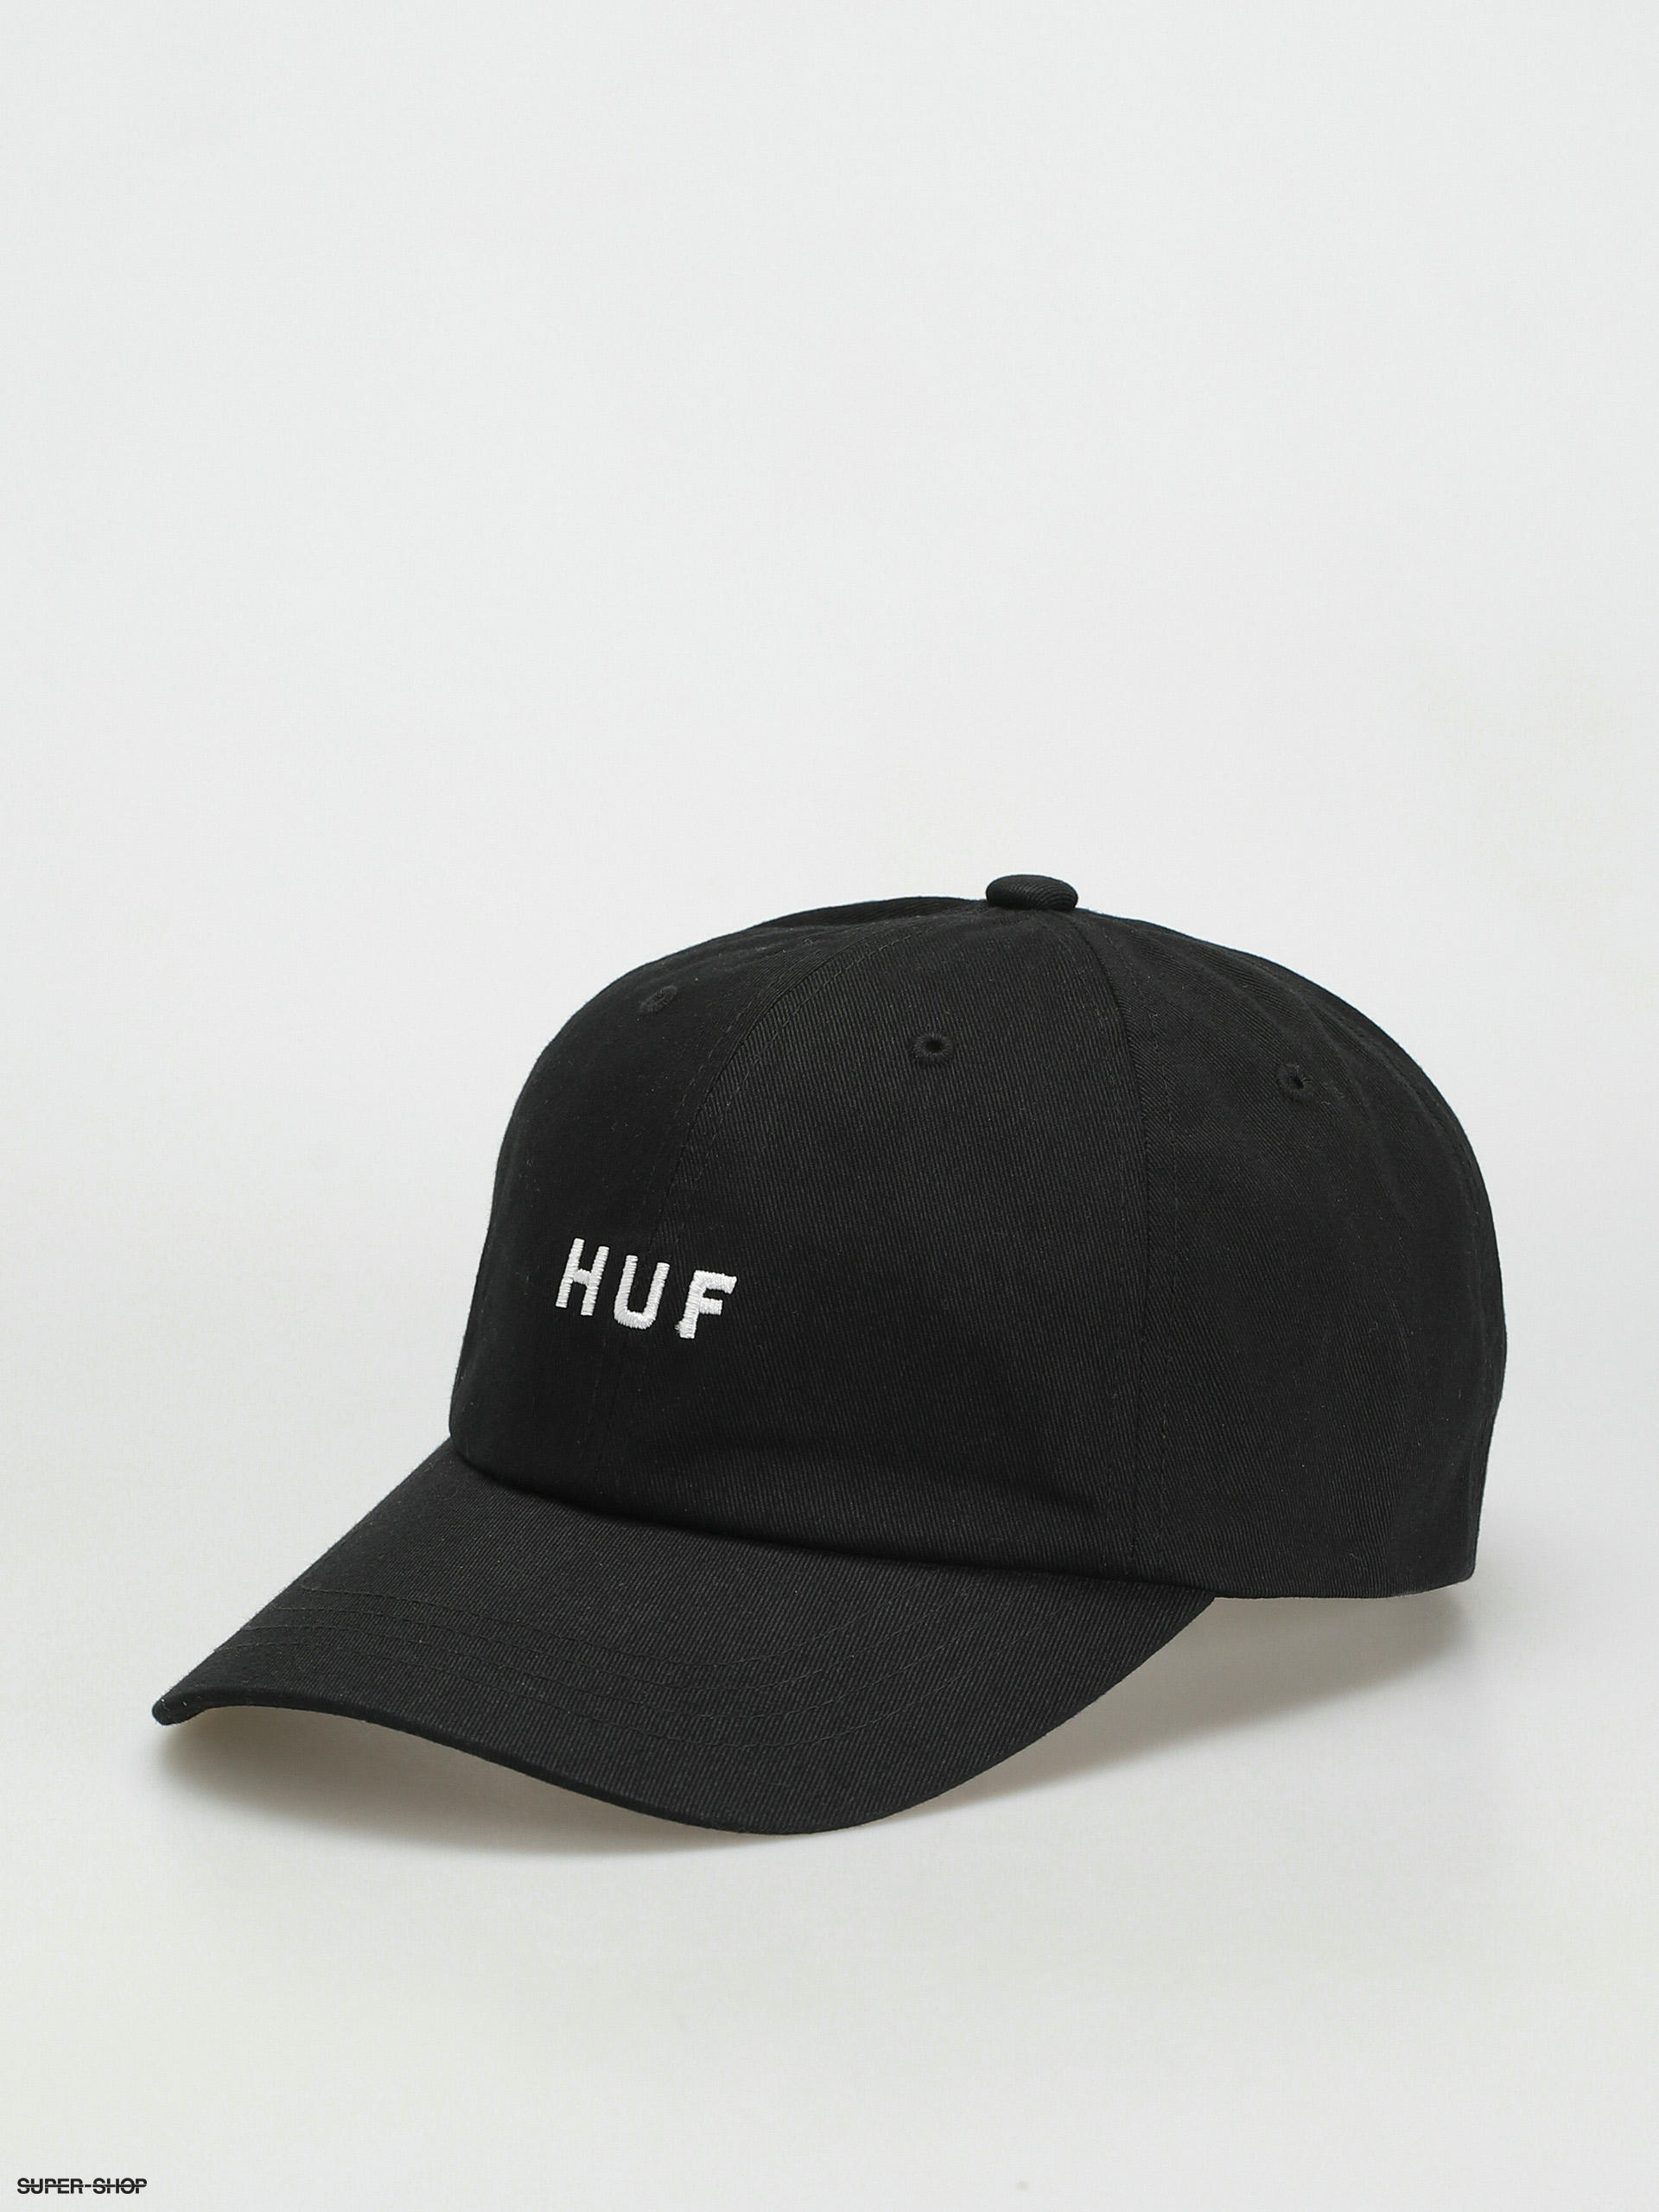 huf cap